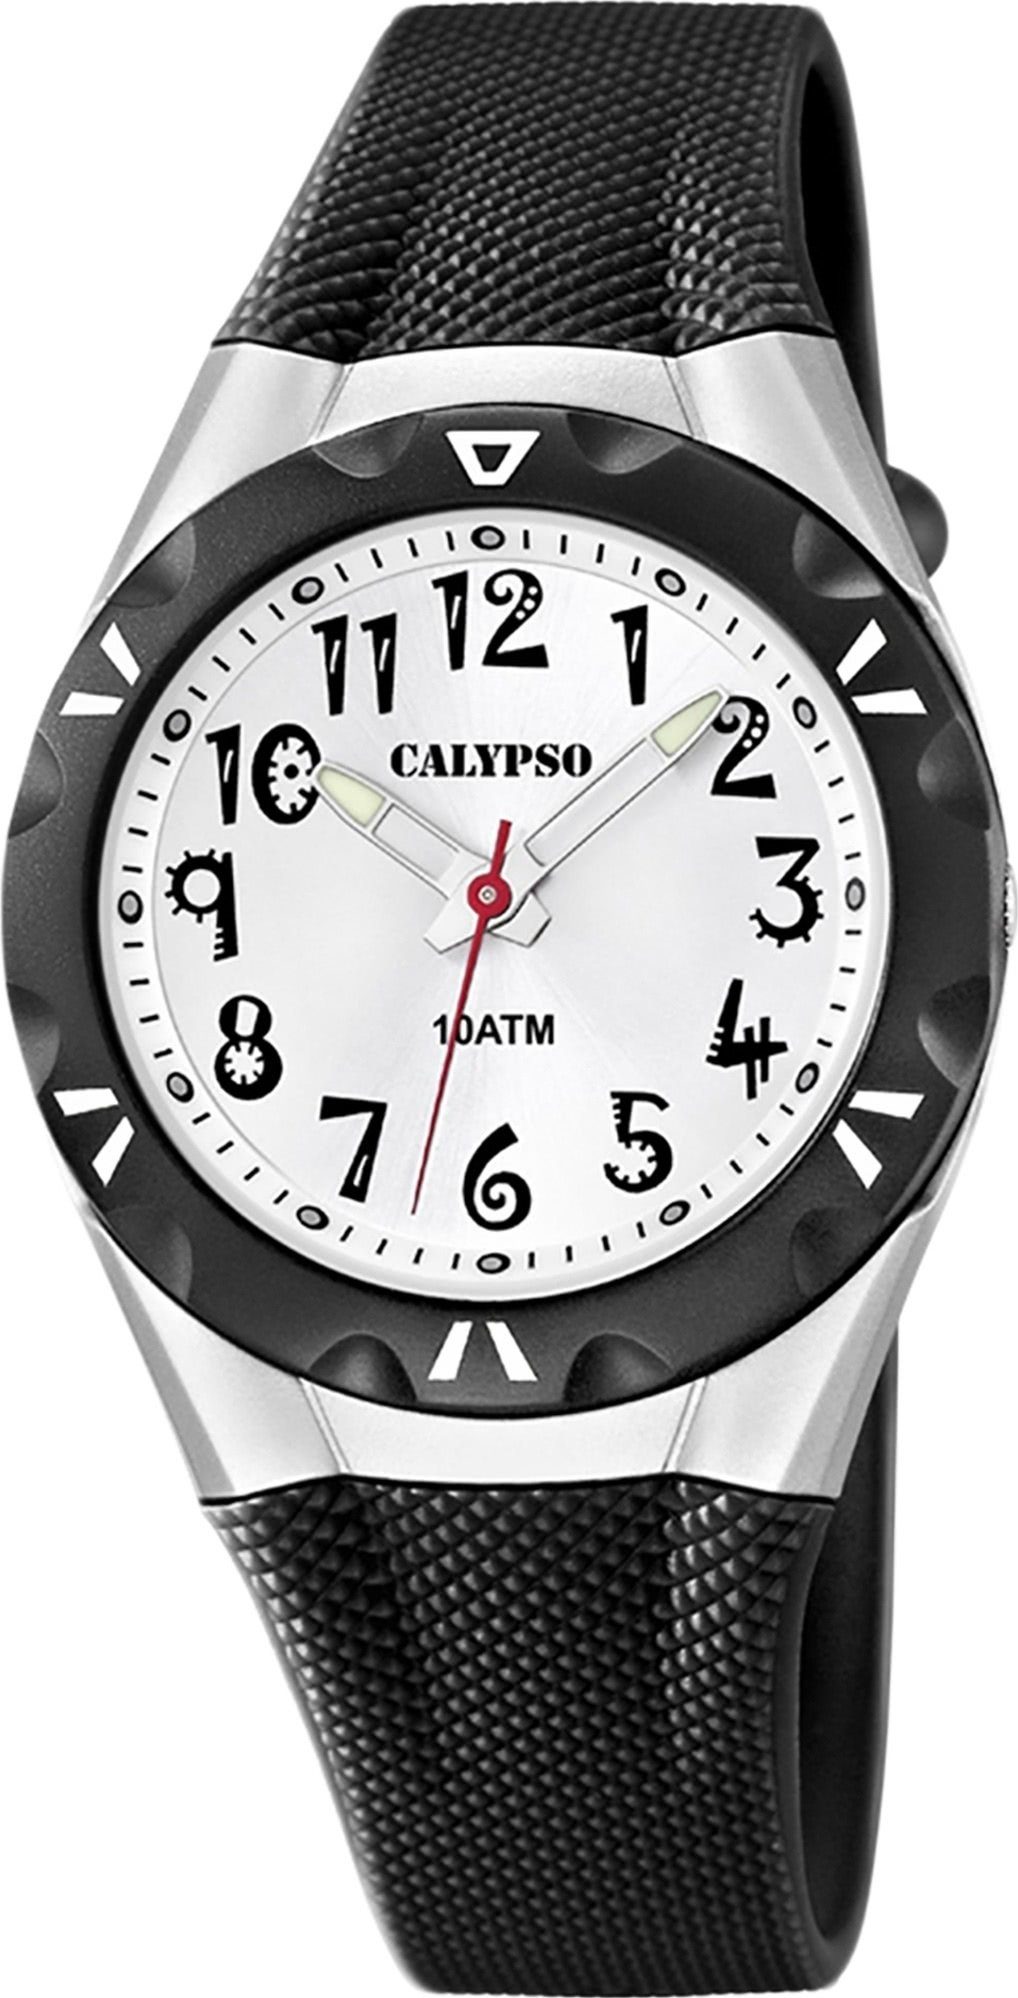 CALYPSO WATCHES Quarzuhr Damen Kunststoffband, Uhr Calypso PURarmband K6064/2 Armbanduhr schwarz, rund, Damen Fashion